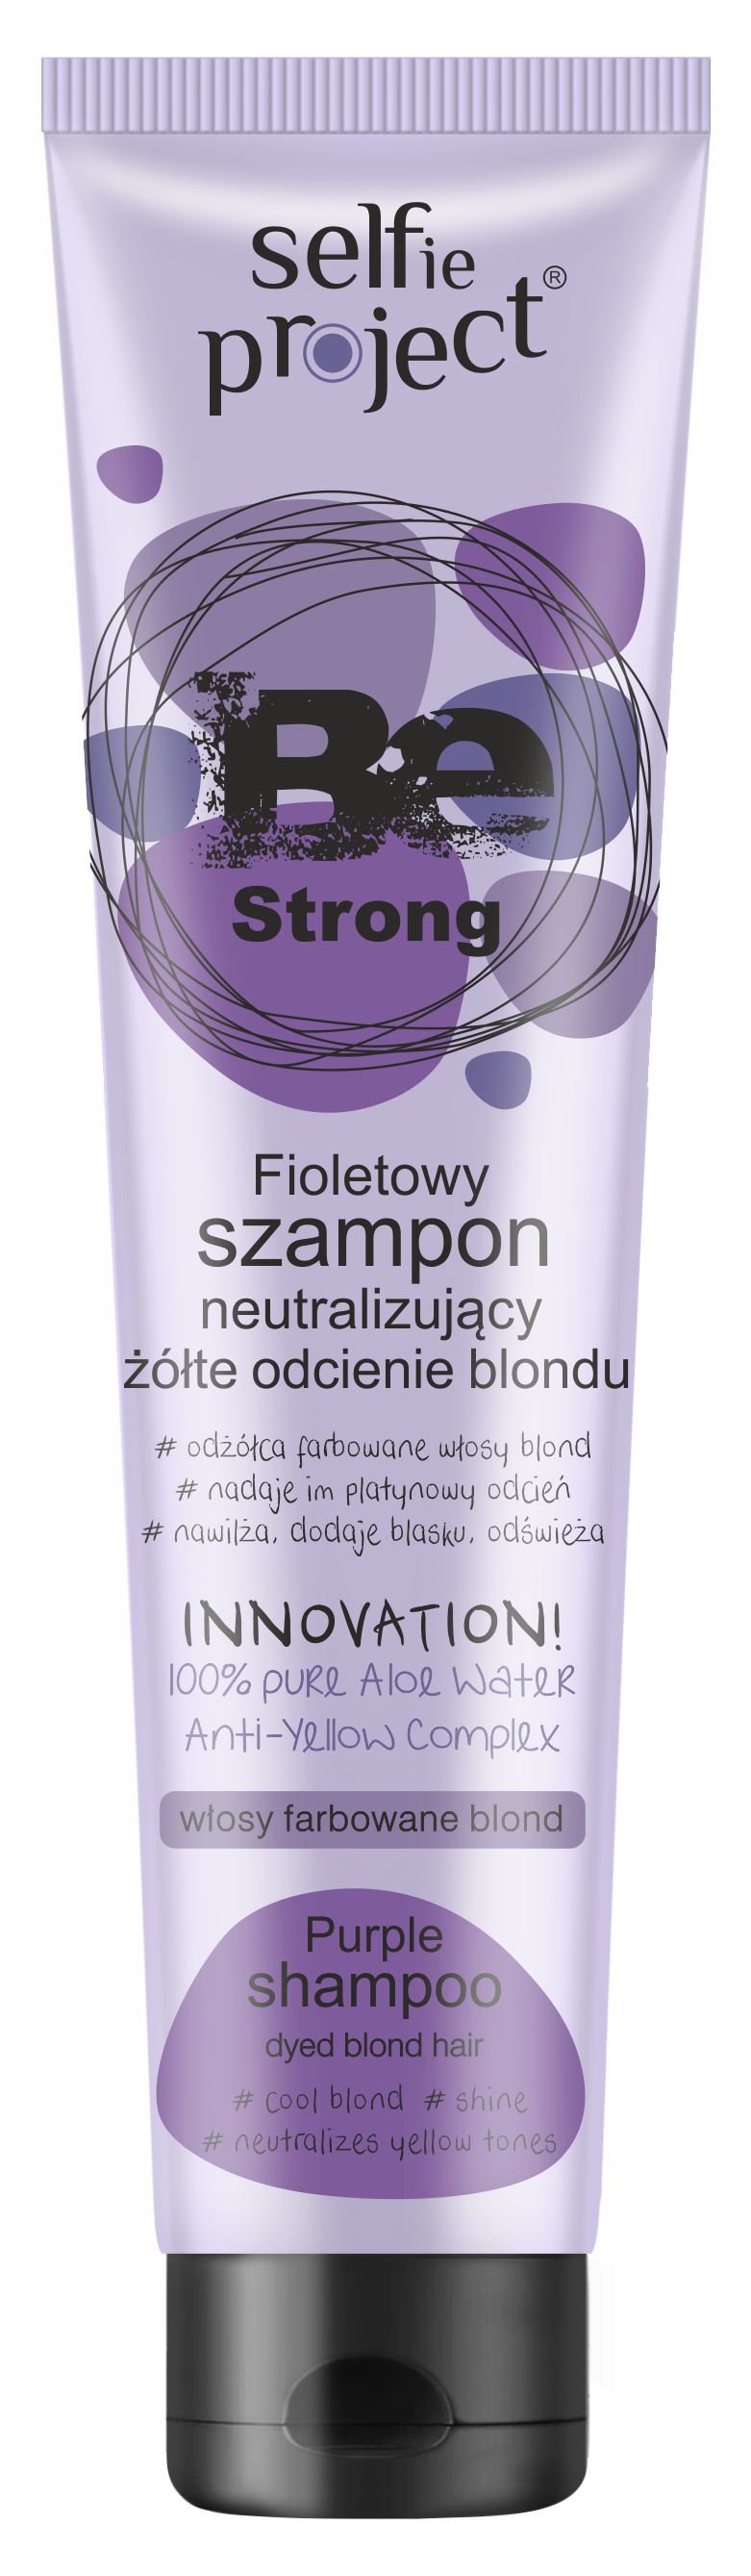 fioletowy szampon